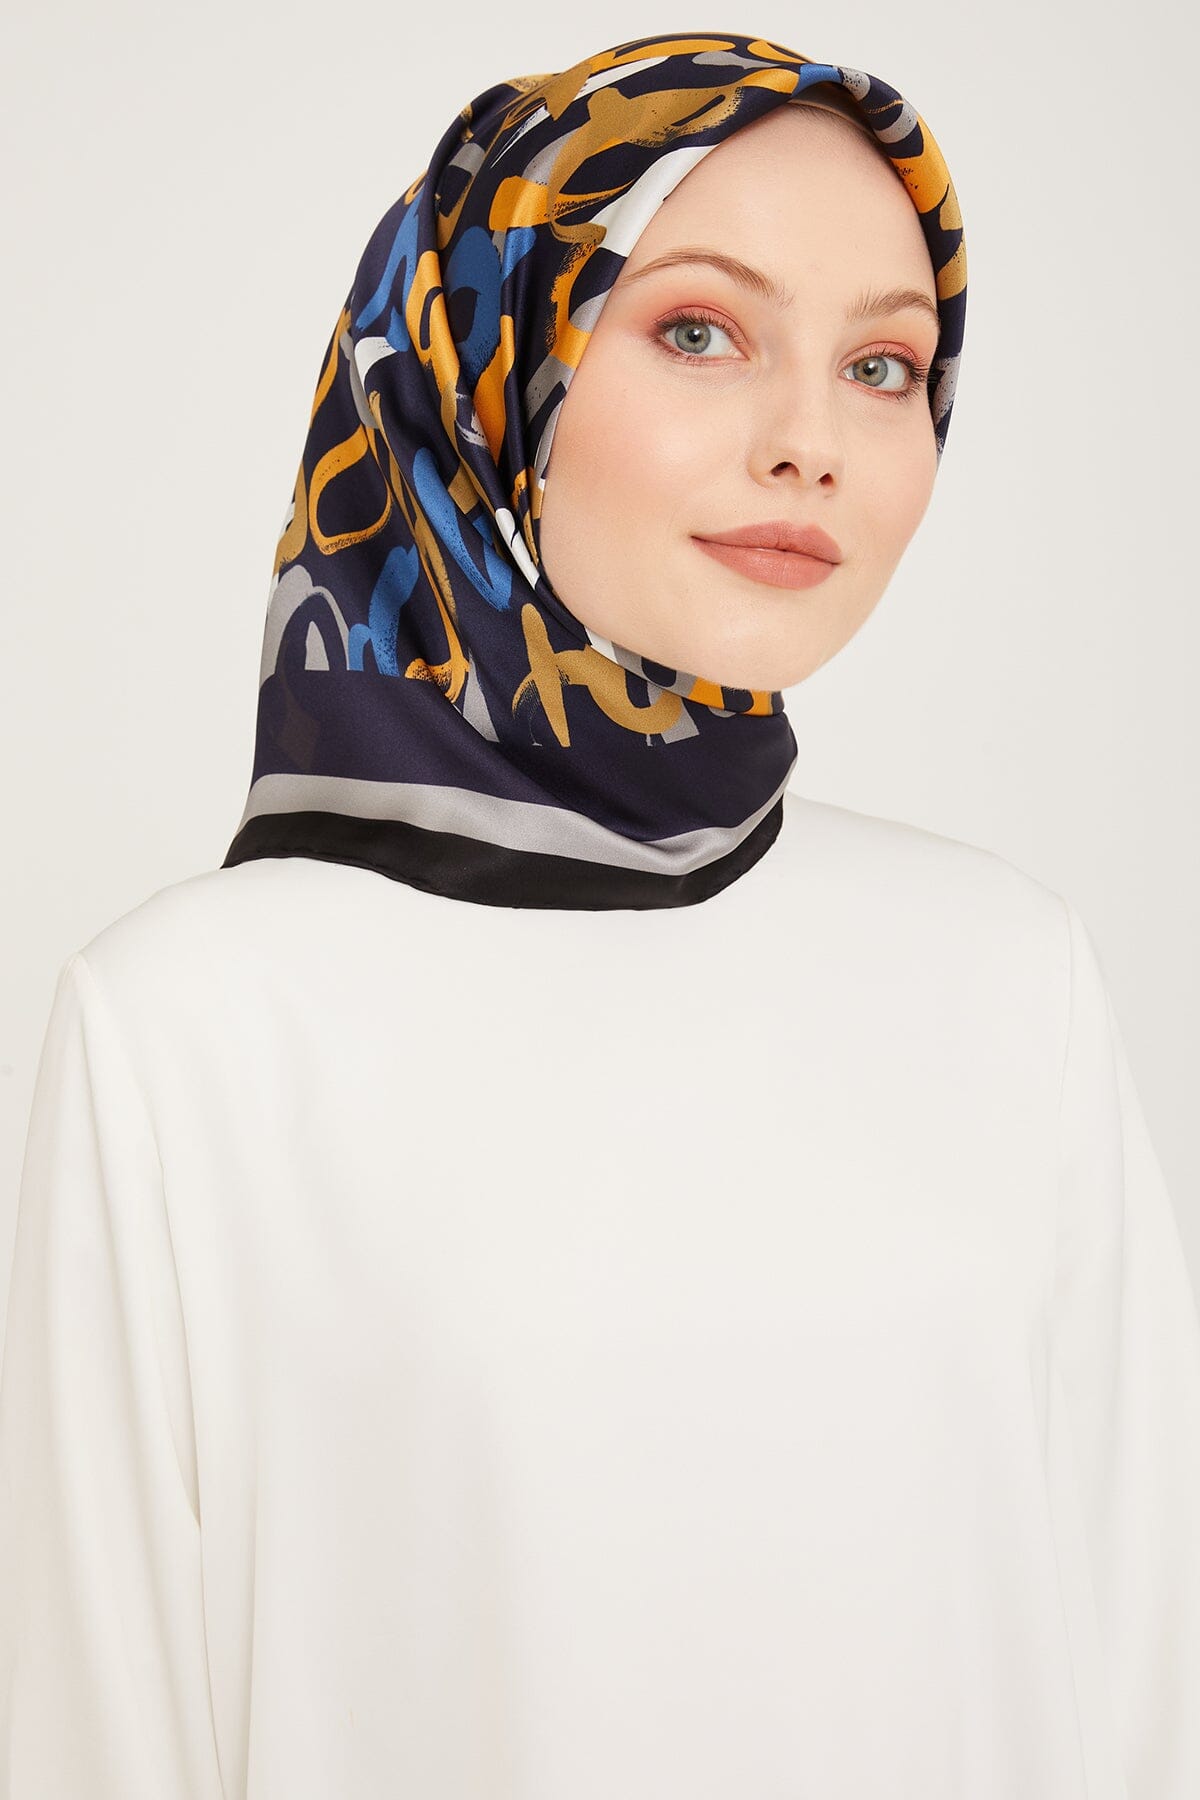 Armine Nudle Designer Silk Scarf #57 Silk Hijabs,Armine Armine 